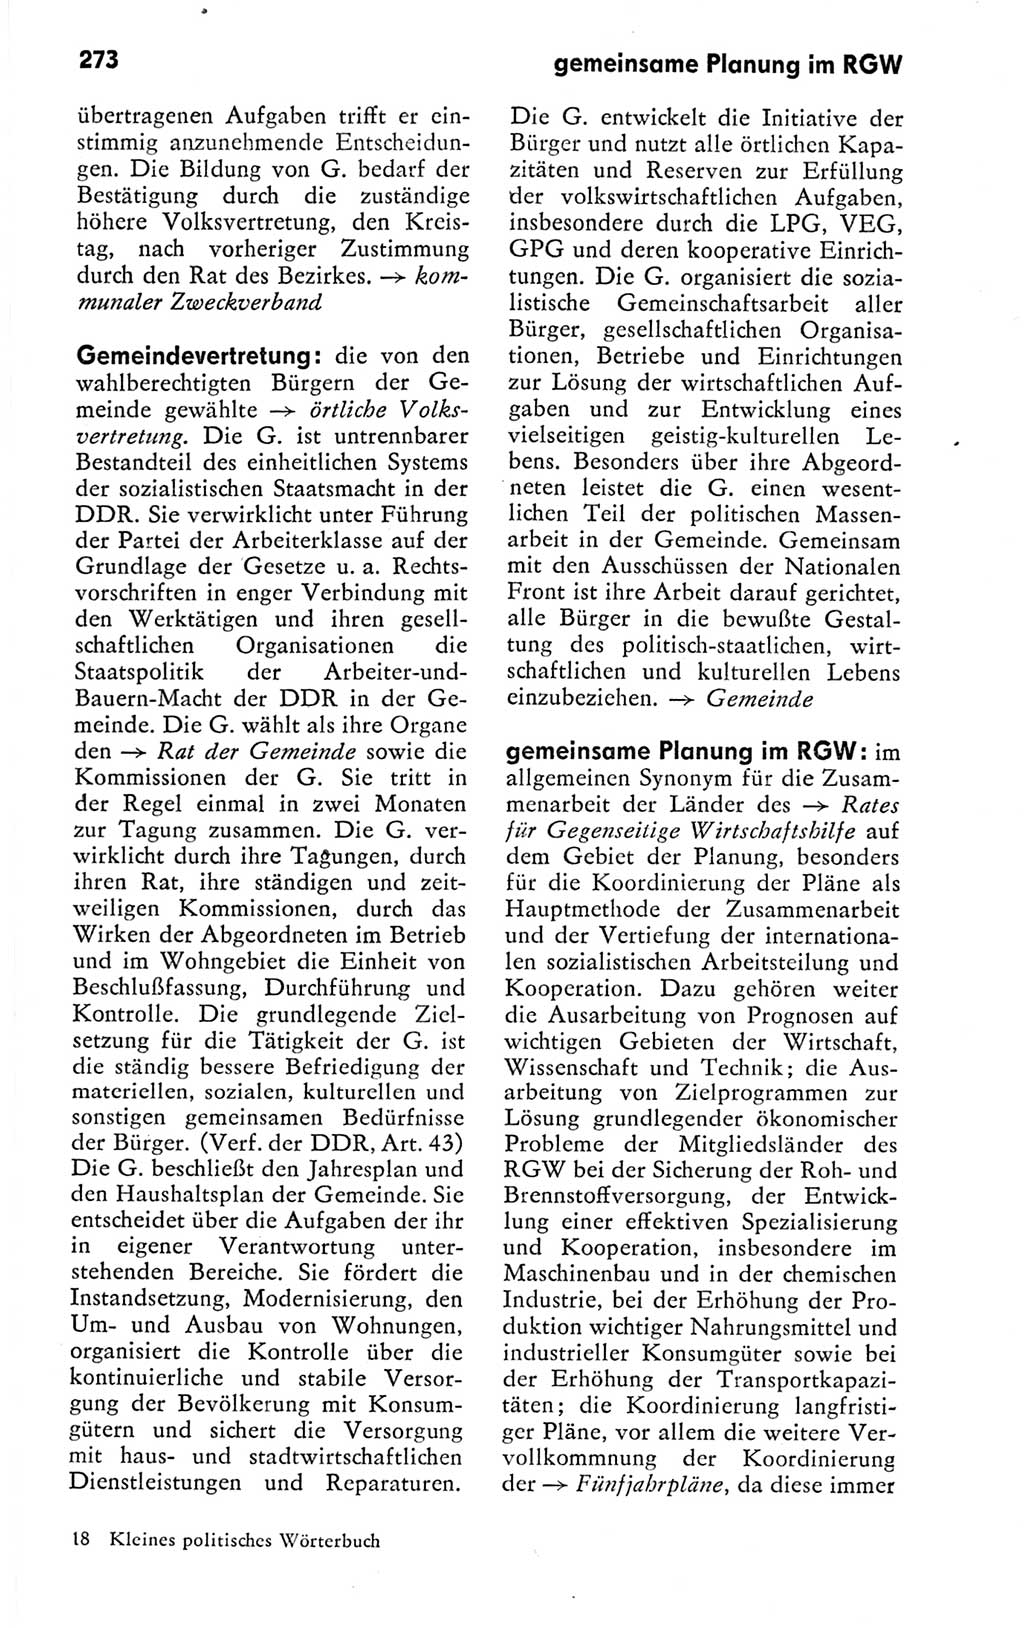 Kleines politisches Wörterbuch [Deutsche Demokratische Republik (DDR)] 1978, Seite 273 (Kl. pol. Wb. DDR 1978, S. 273)